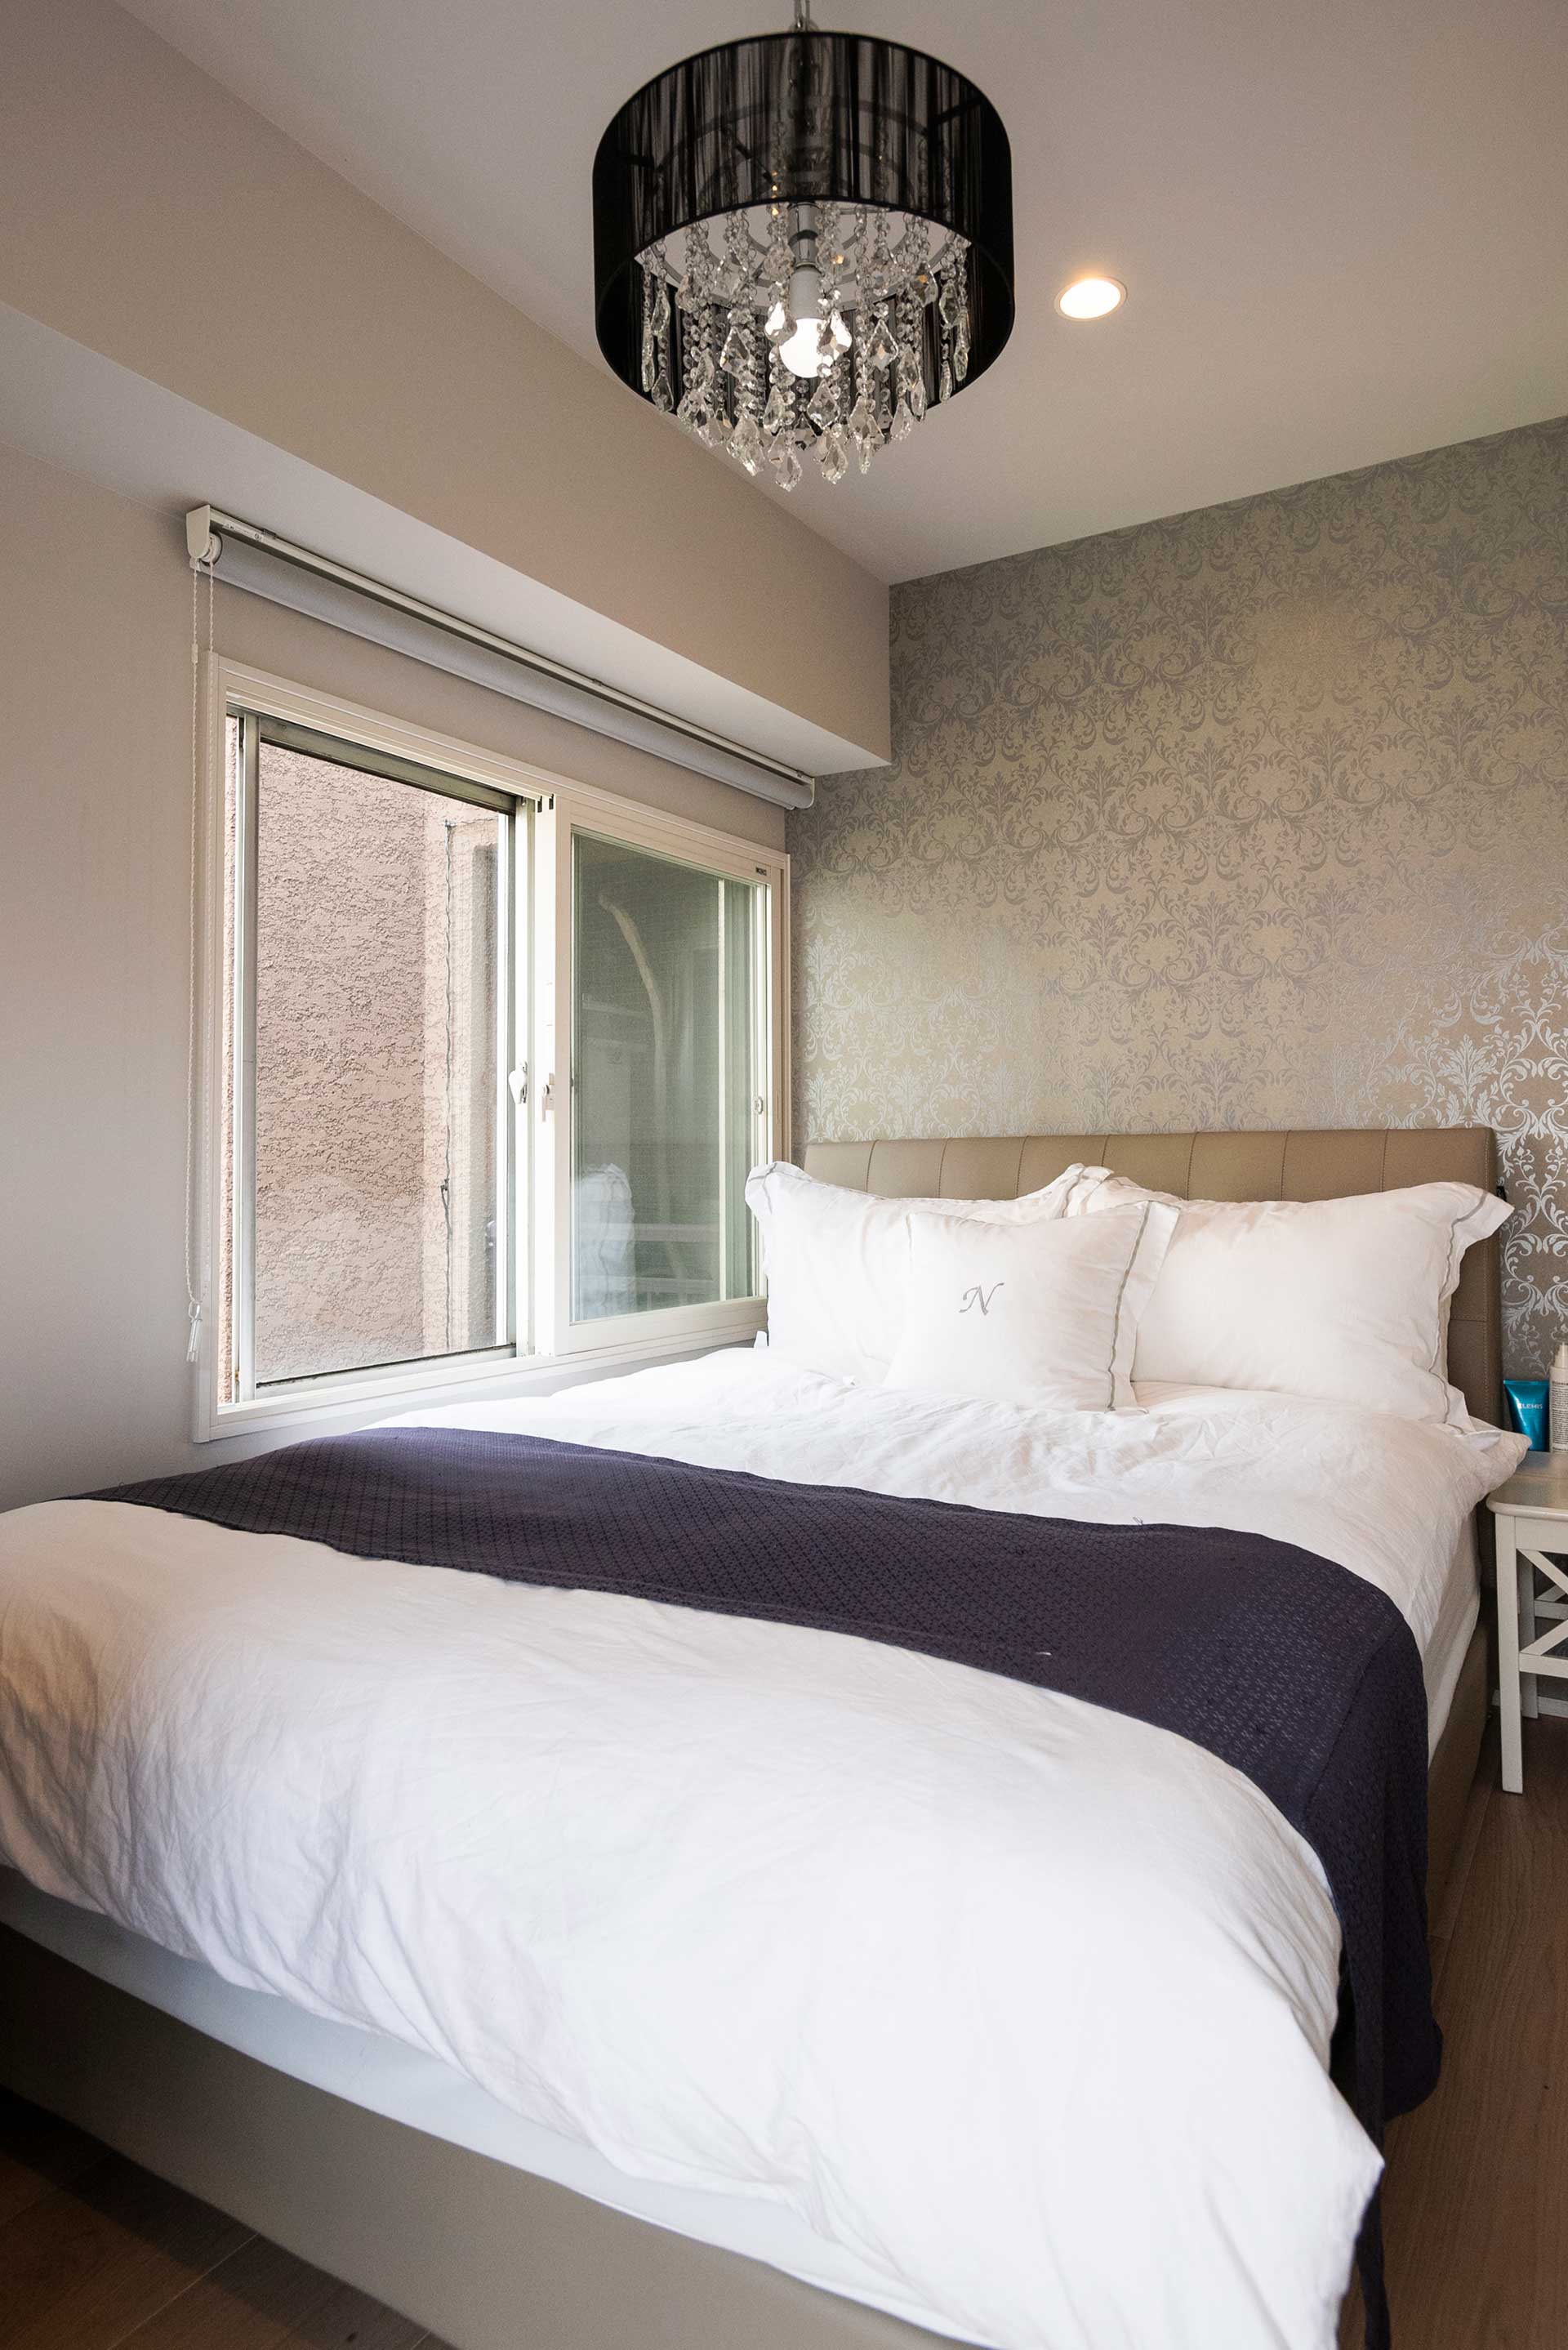 ベッドルームは壁紙を選び、ベッドメイキングなどホテルライクにコーディネート。